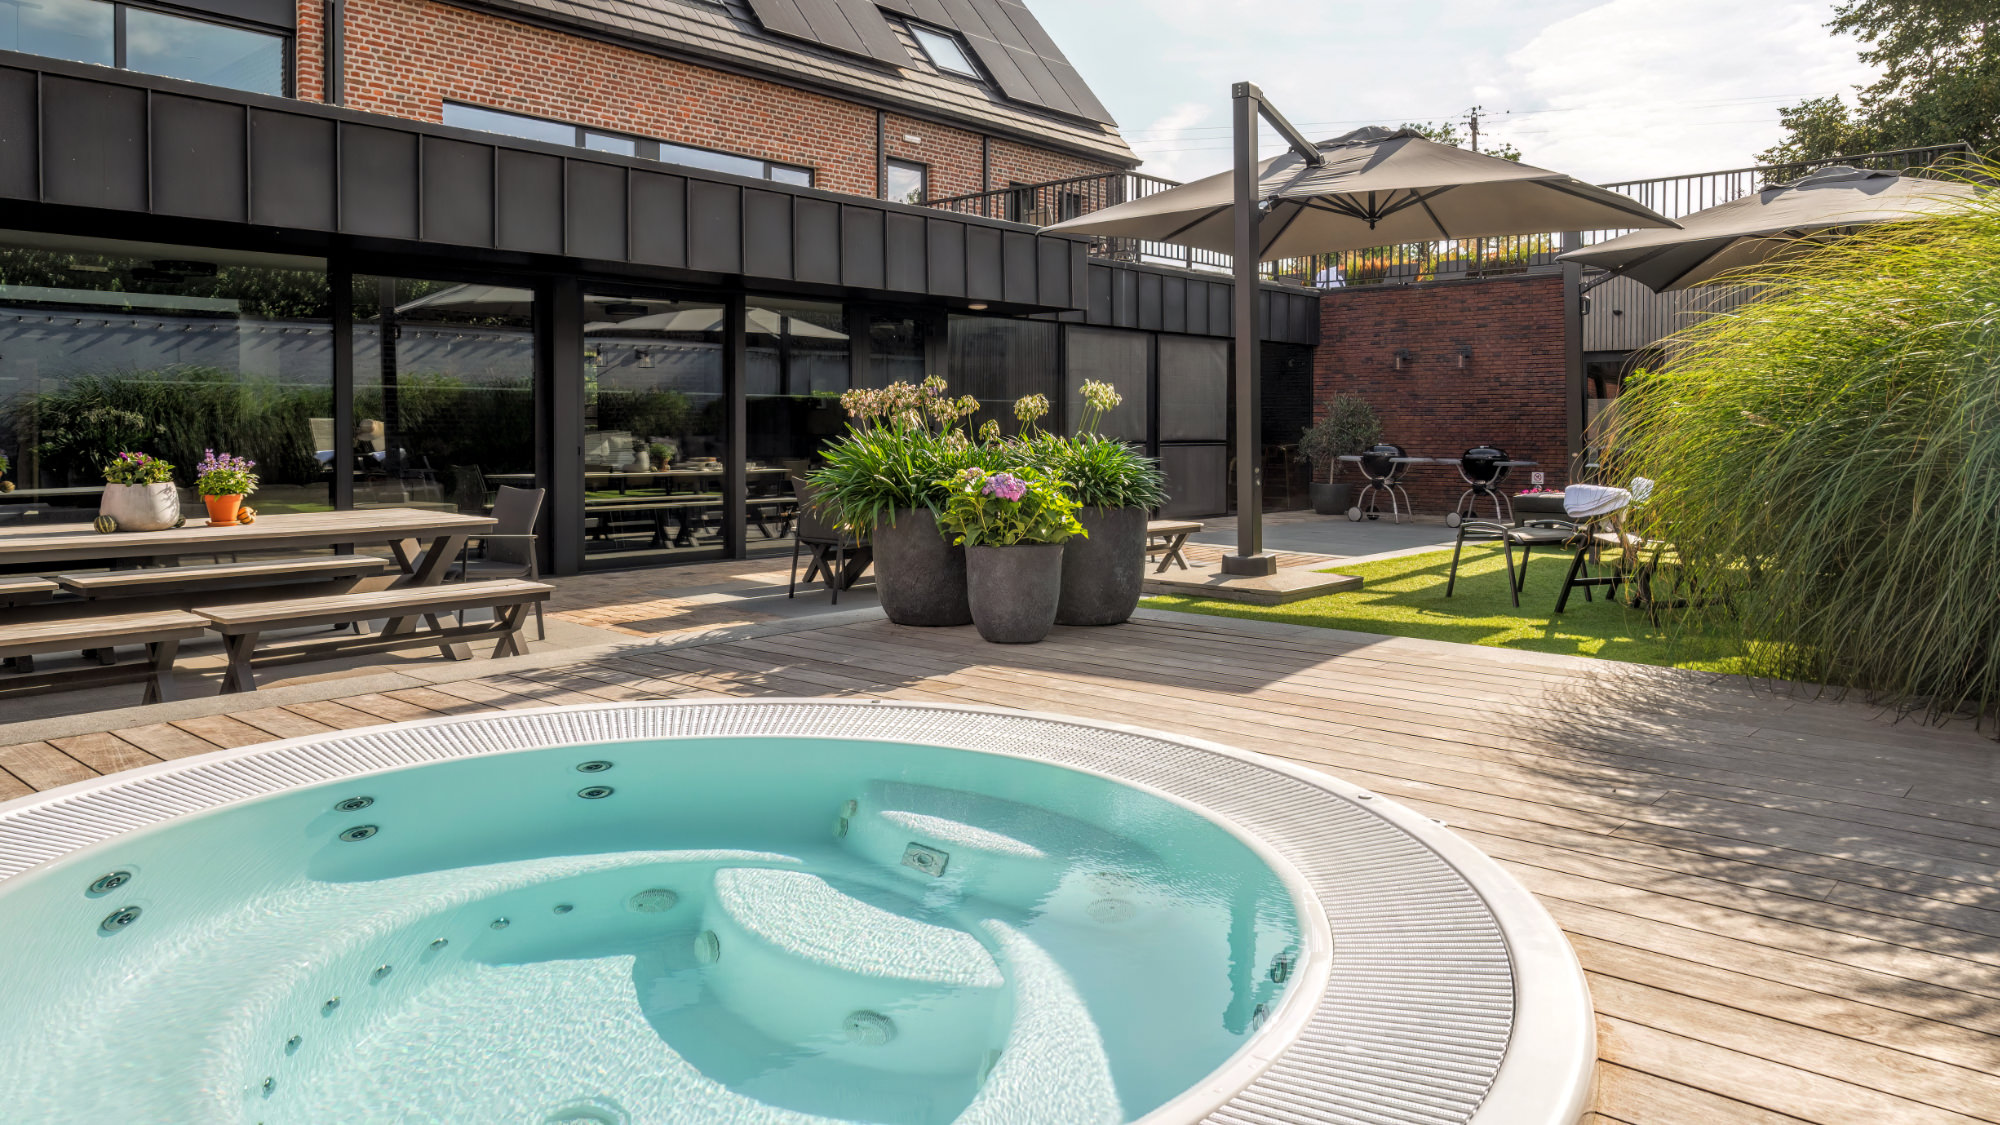 Photo d'ensemble de la maison de vacances Belvoor avec piscine dans le jardin.